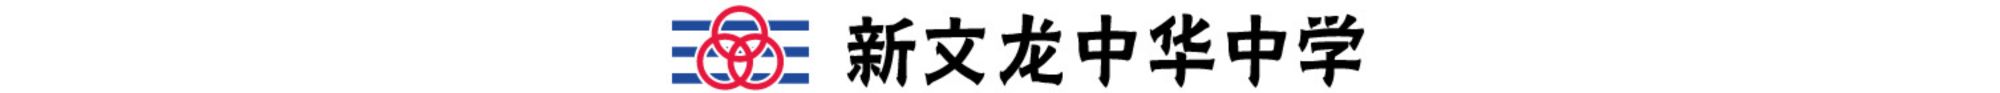 新文龙中华中学 Logo